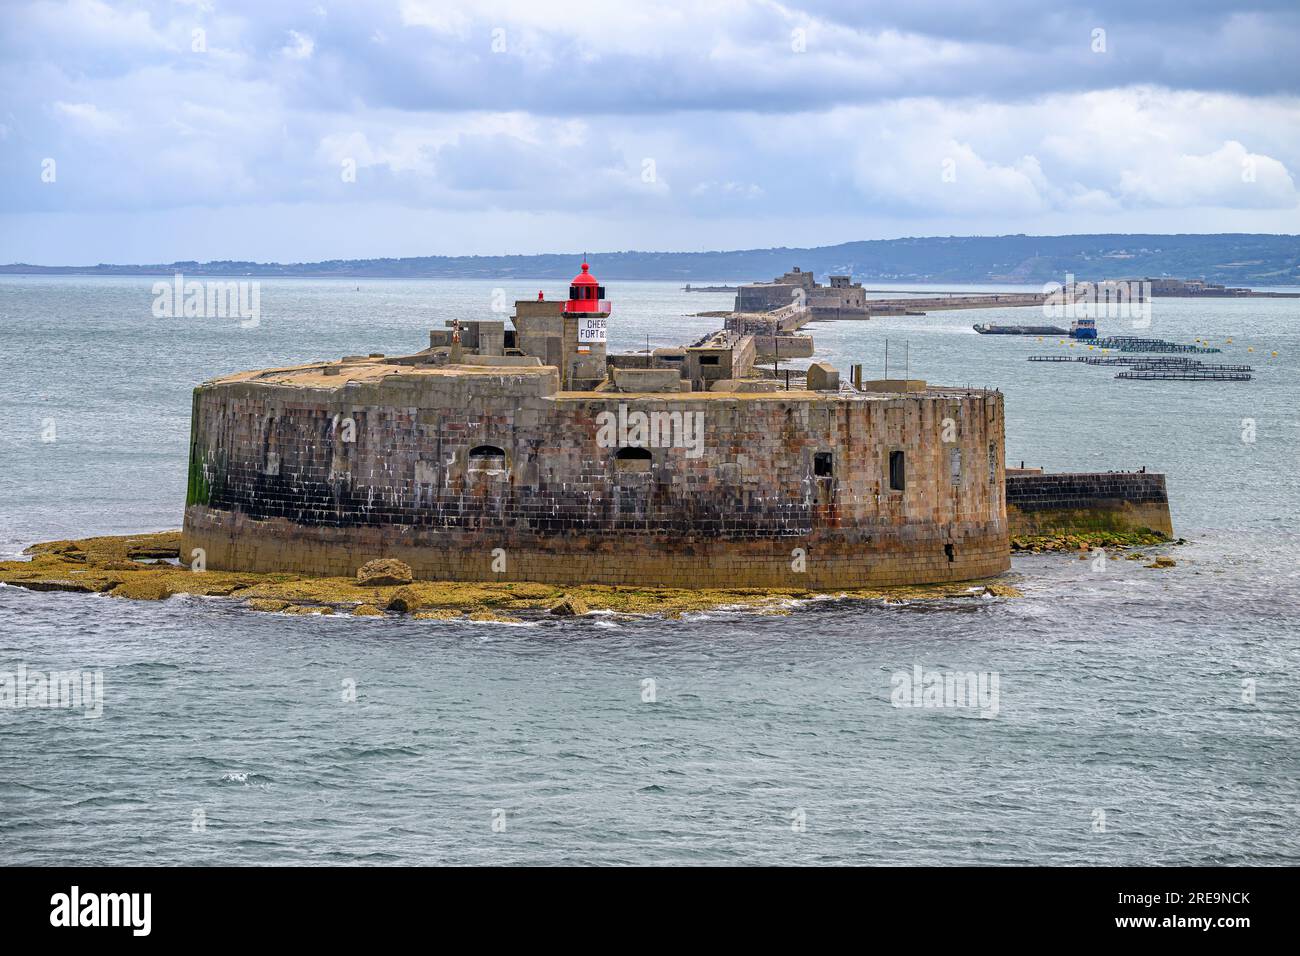 Il forte occidentale si trova all'approdo di Cherbourg Harbour in Normandia, Francia. Foto Stock